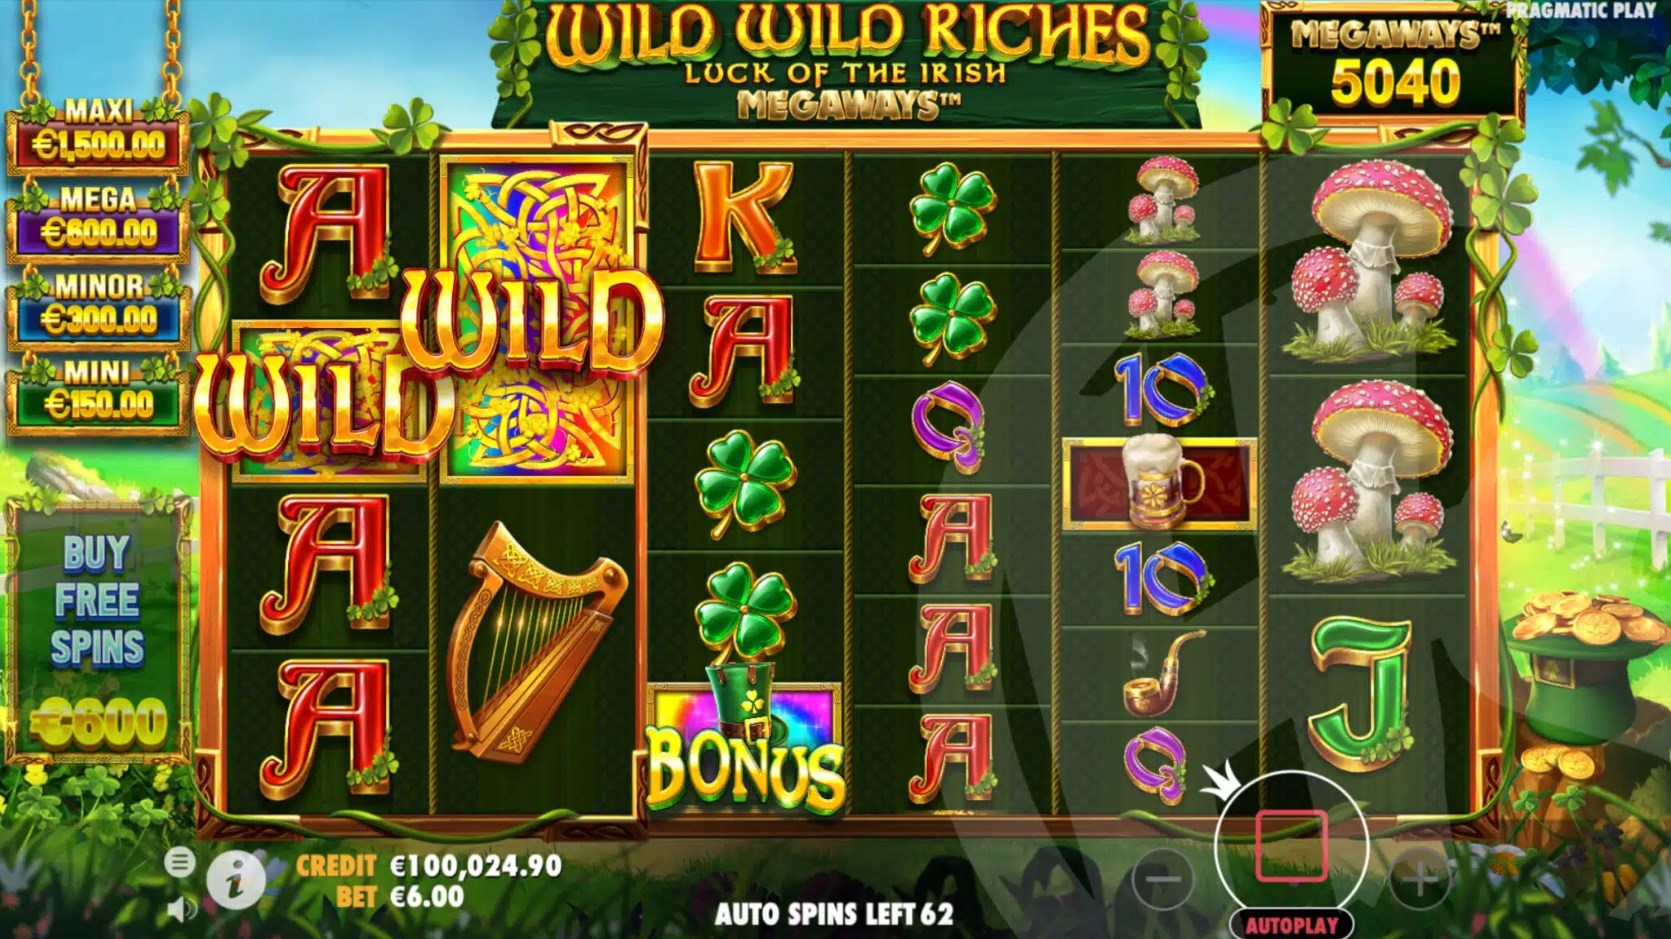 Wild Wild Riches slot game download latest version  1.0.0 screenshot 4